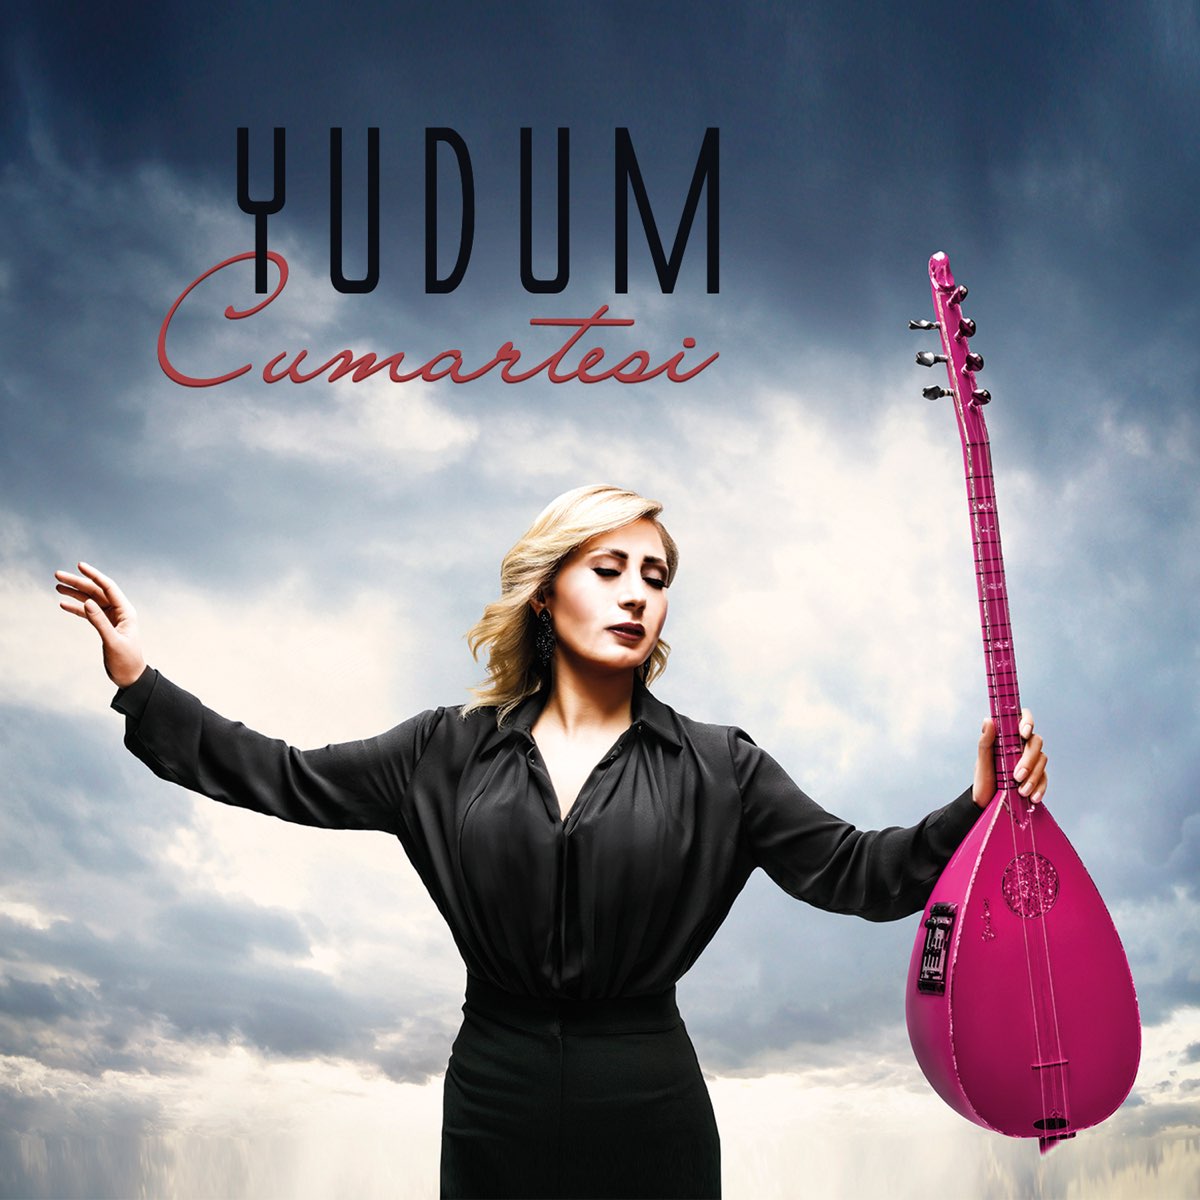 Cumartesi - Album by Yudum - Apple Music